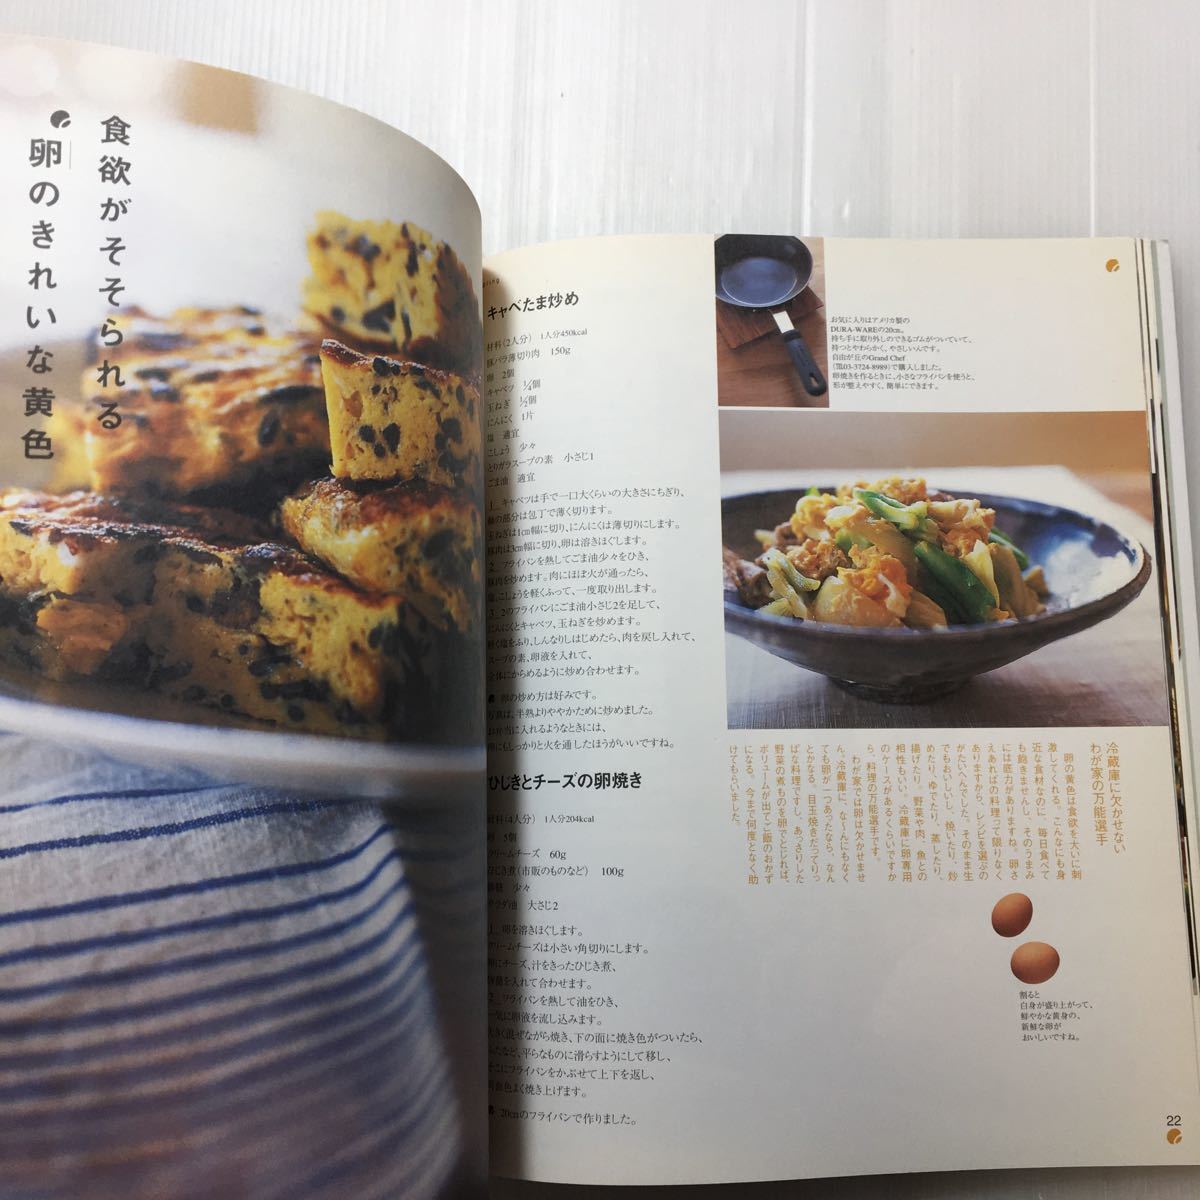 zaa-174♪藤井恵さんの『幸せごはん』 cookingシリーズ +飛田和緒の毎日がおいしいごはん クッキングシリーズ 2冊セット